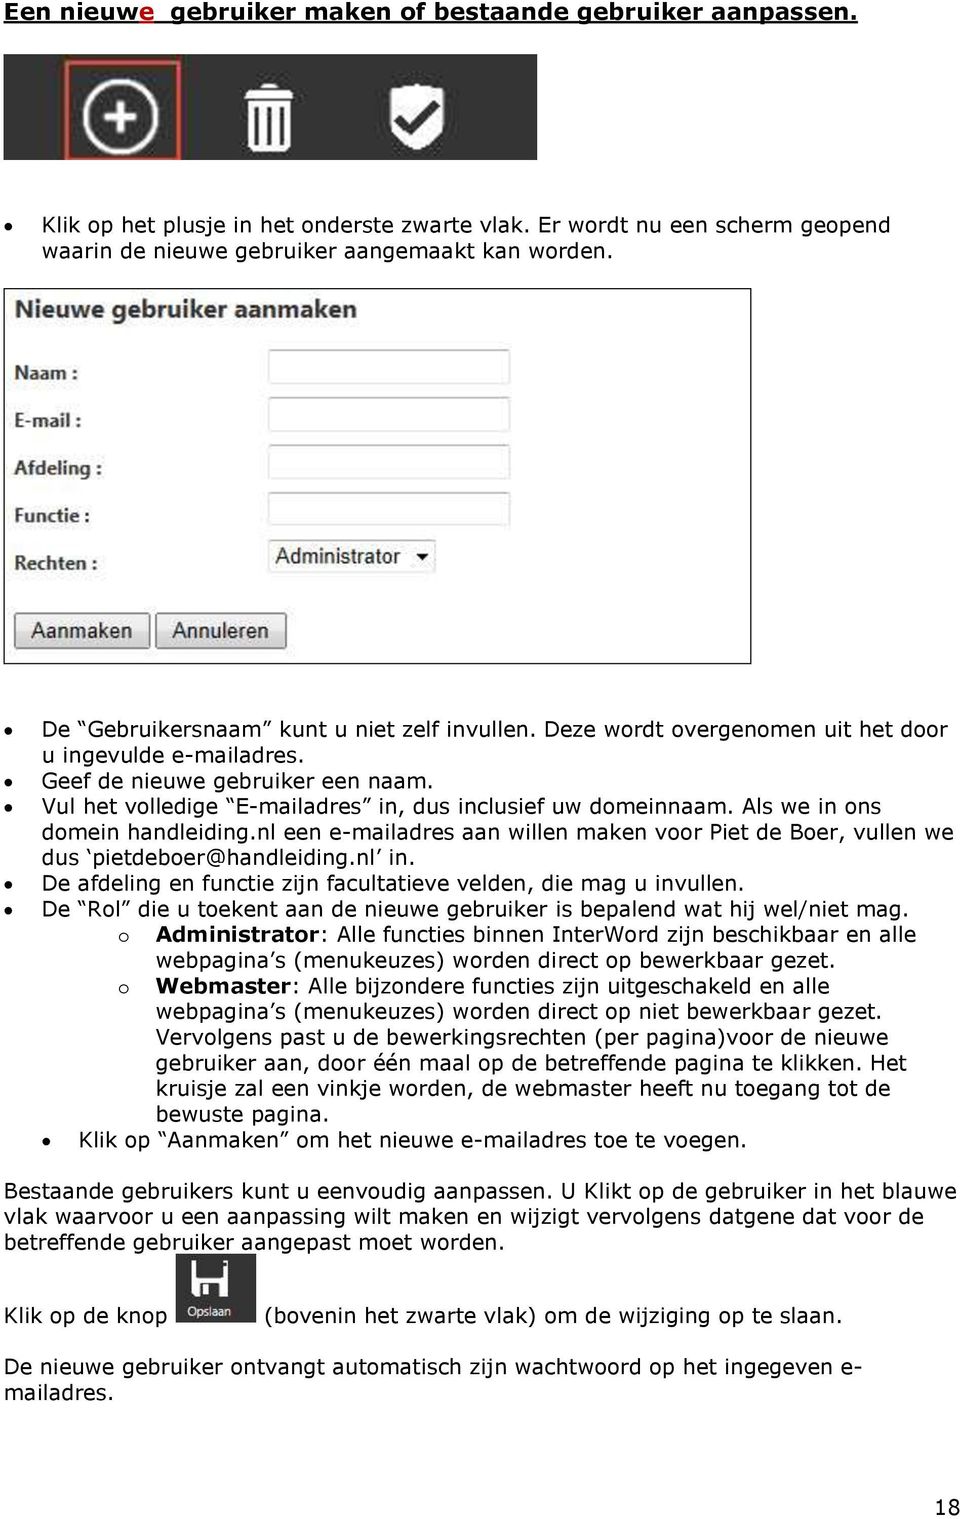 Vul het volledige E-mailadres in, dus inclusief uw domeinnaam. Als we in ons domein handleiding.nl een e-mailadres aan willen maken voor Piet de Boer, vullen we dus pietdeboer@handleiding.nl in.